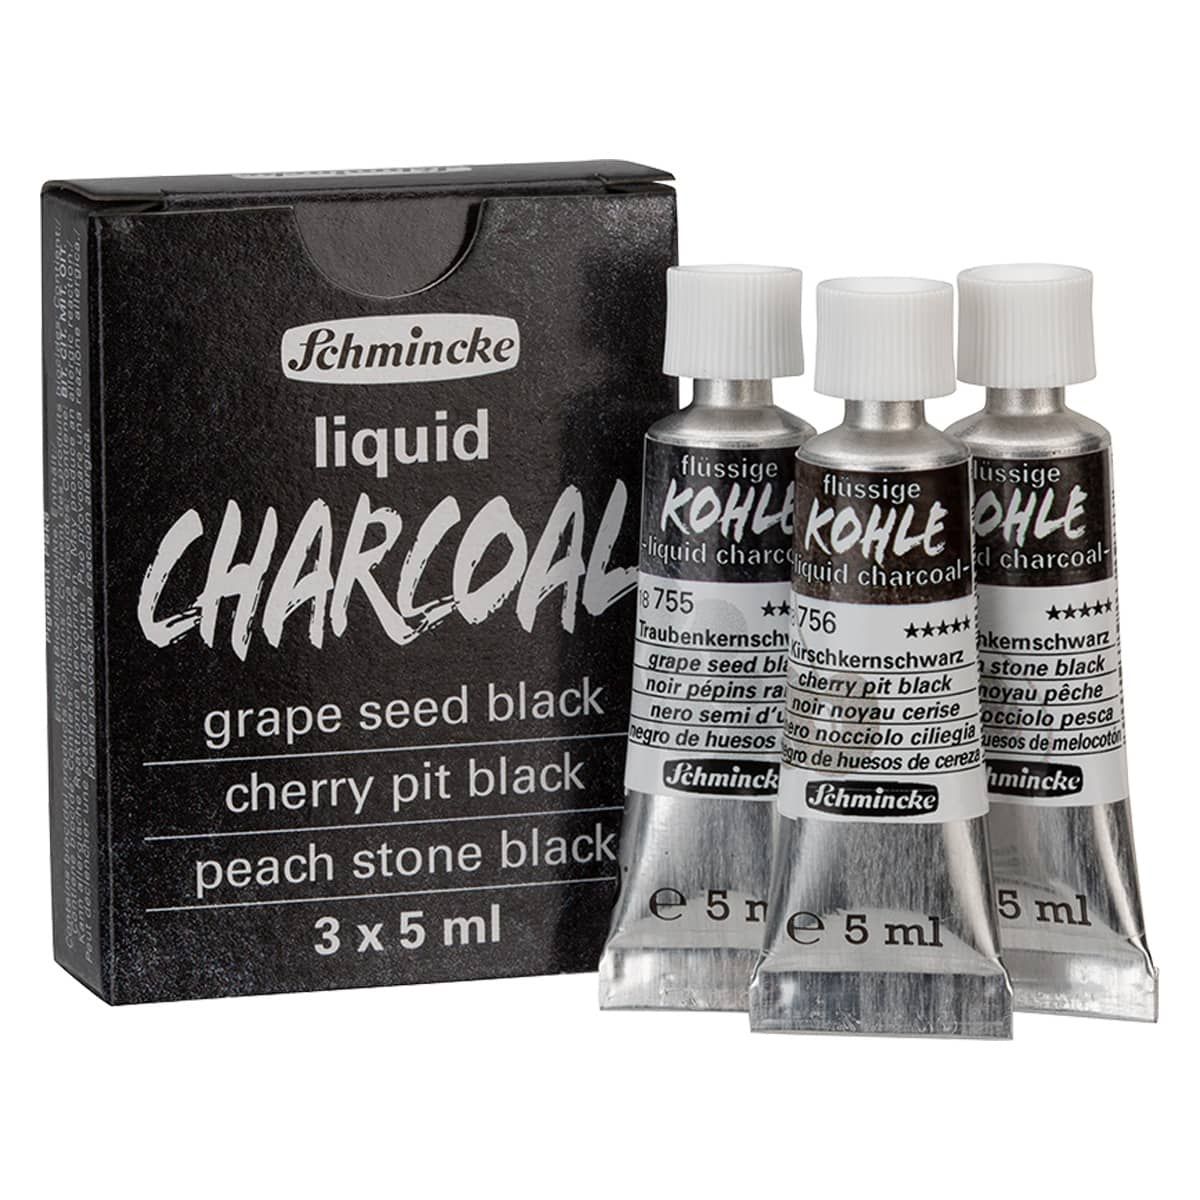 Schmincke Liquid Charcoal Trio Set of 3 Colors, 5ml